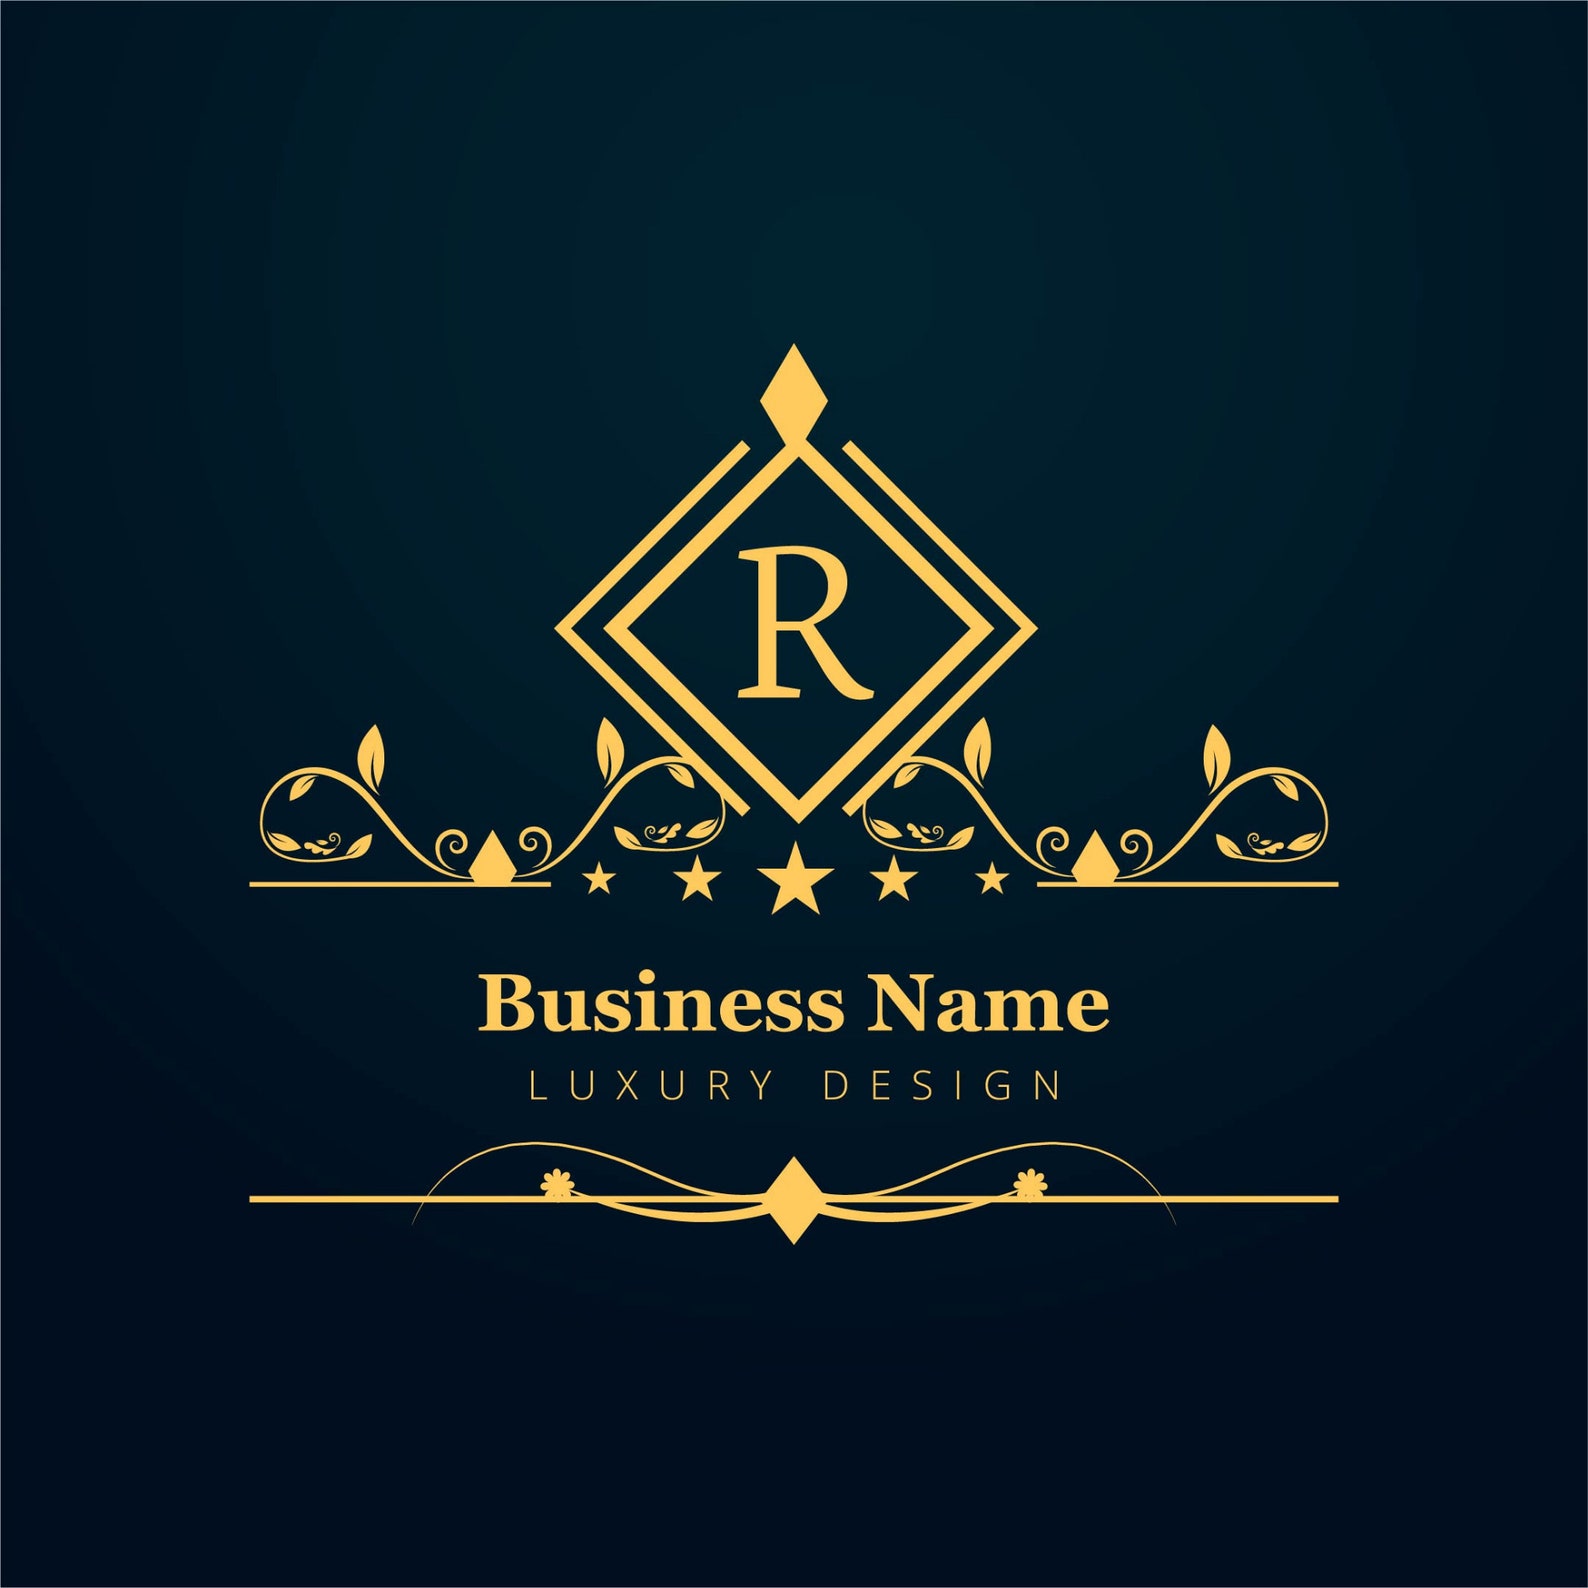 Luxury company. Современные и Роскошные логотипы. Luxury Business logo. Luxury logo vector.